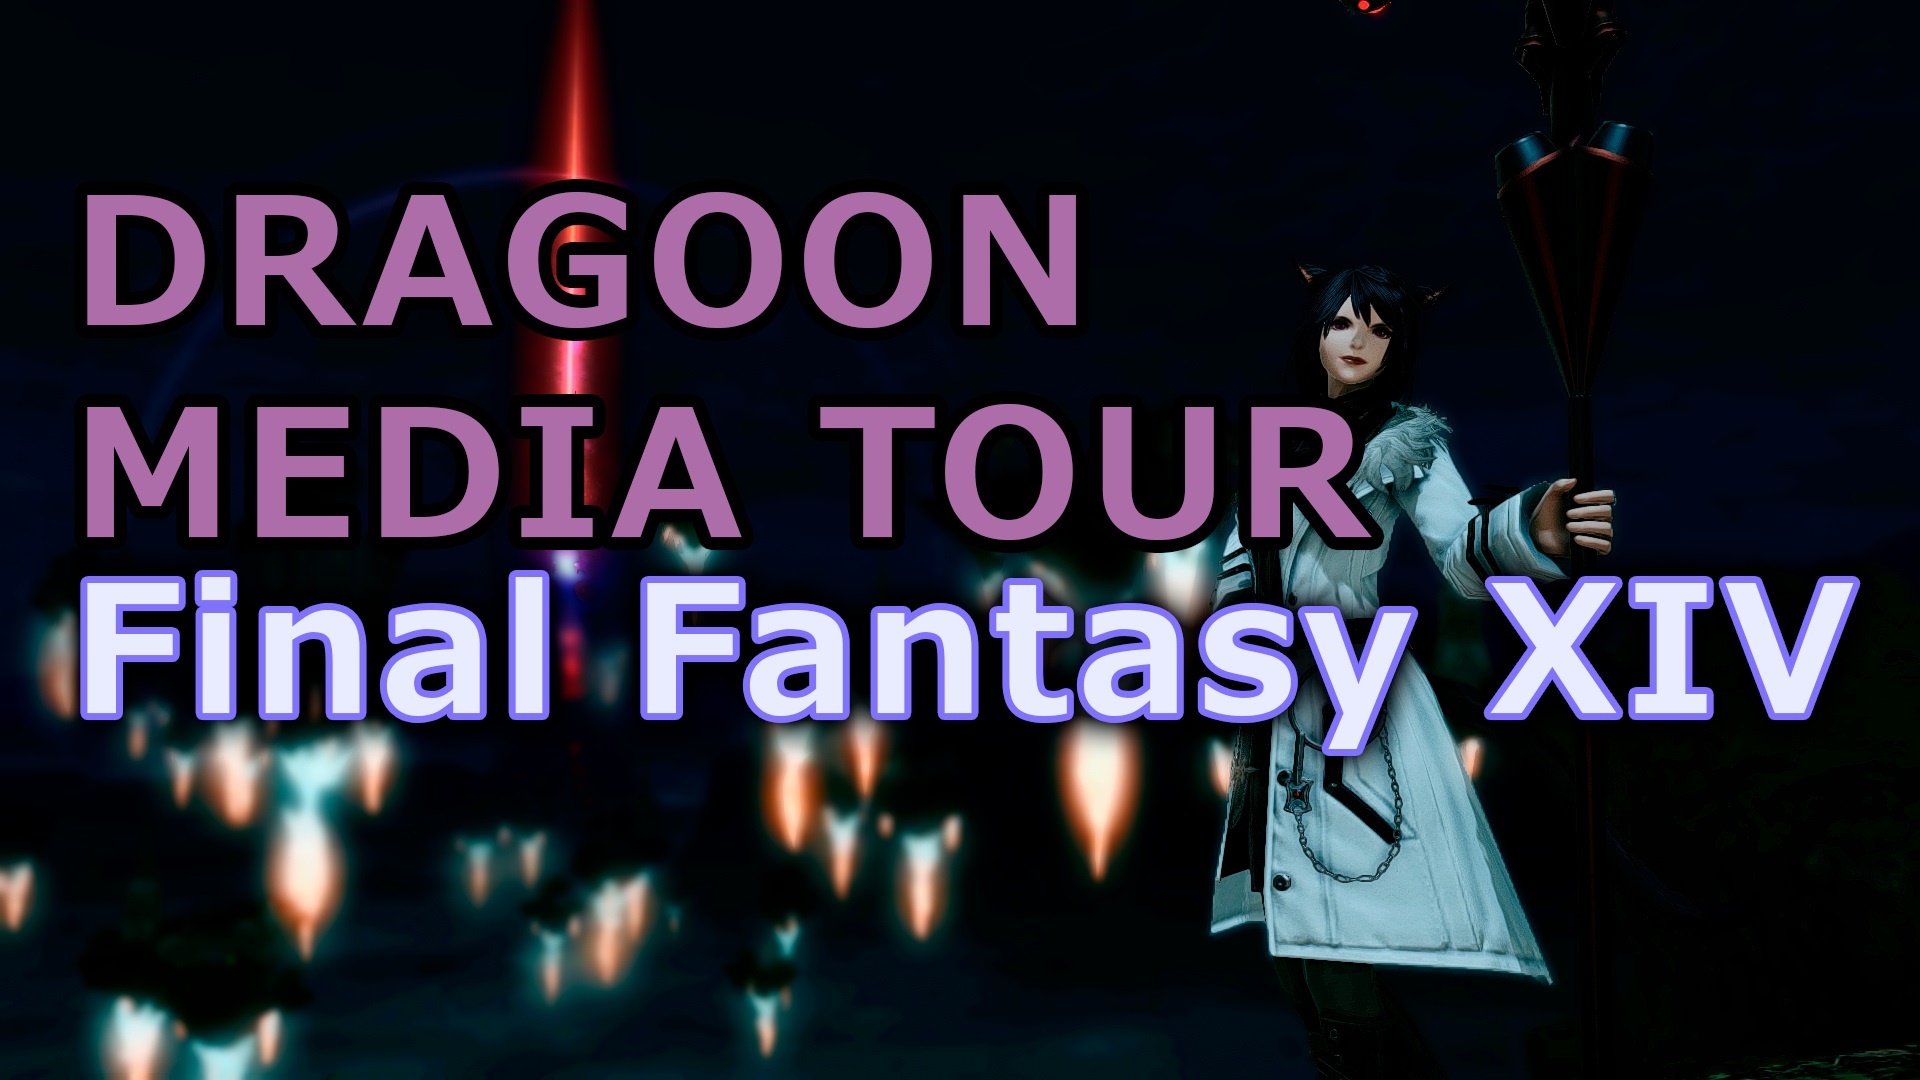 Dragoon Media Tour